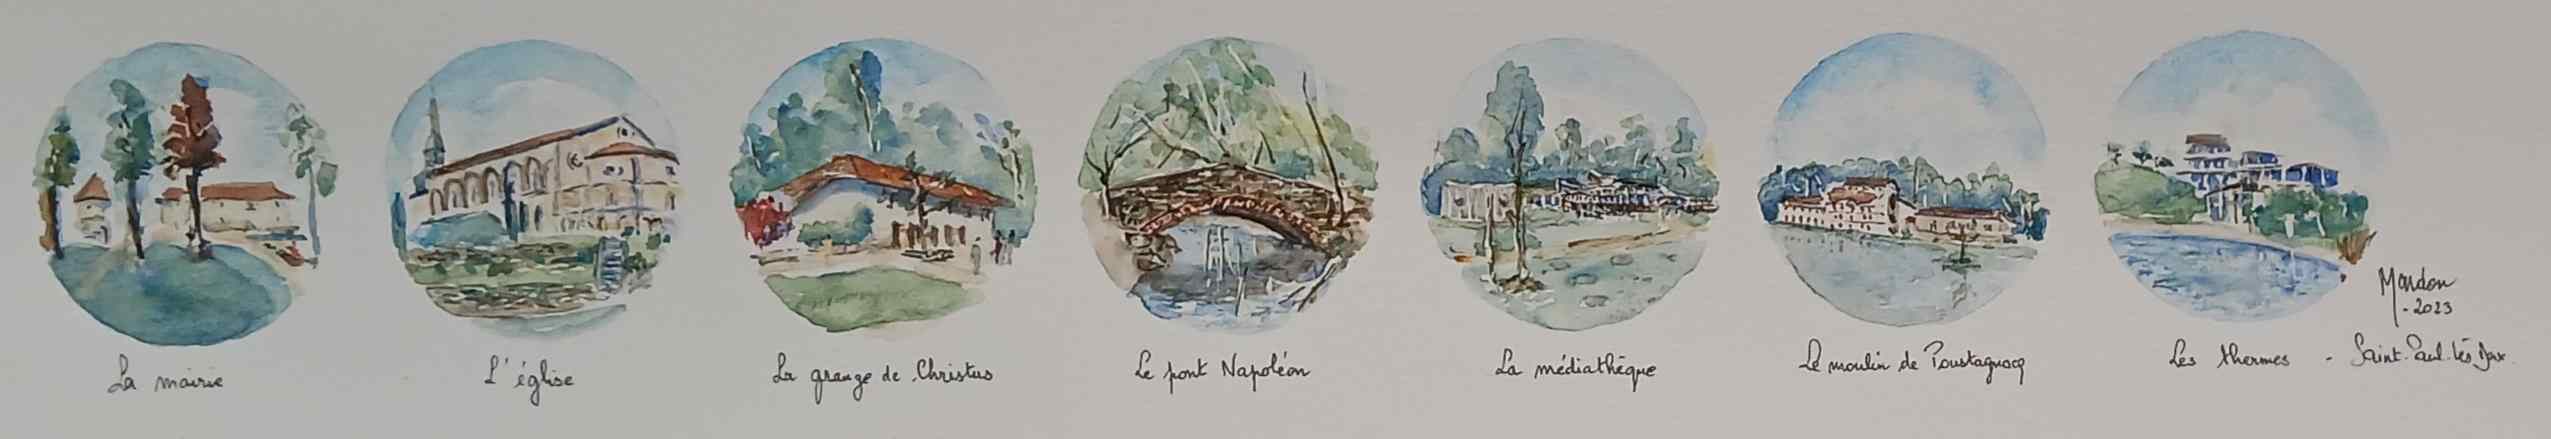 Aquarelle - Saint-Paul-lès-Dax - Mairie - Eglise - Grange - Christus - Pont romain - Médiathèque - Moulin - Pustagnac - Lac - Thermes